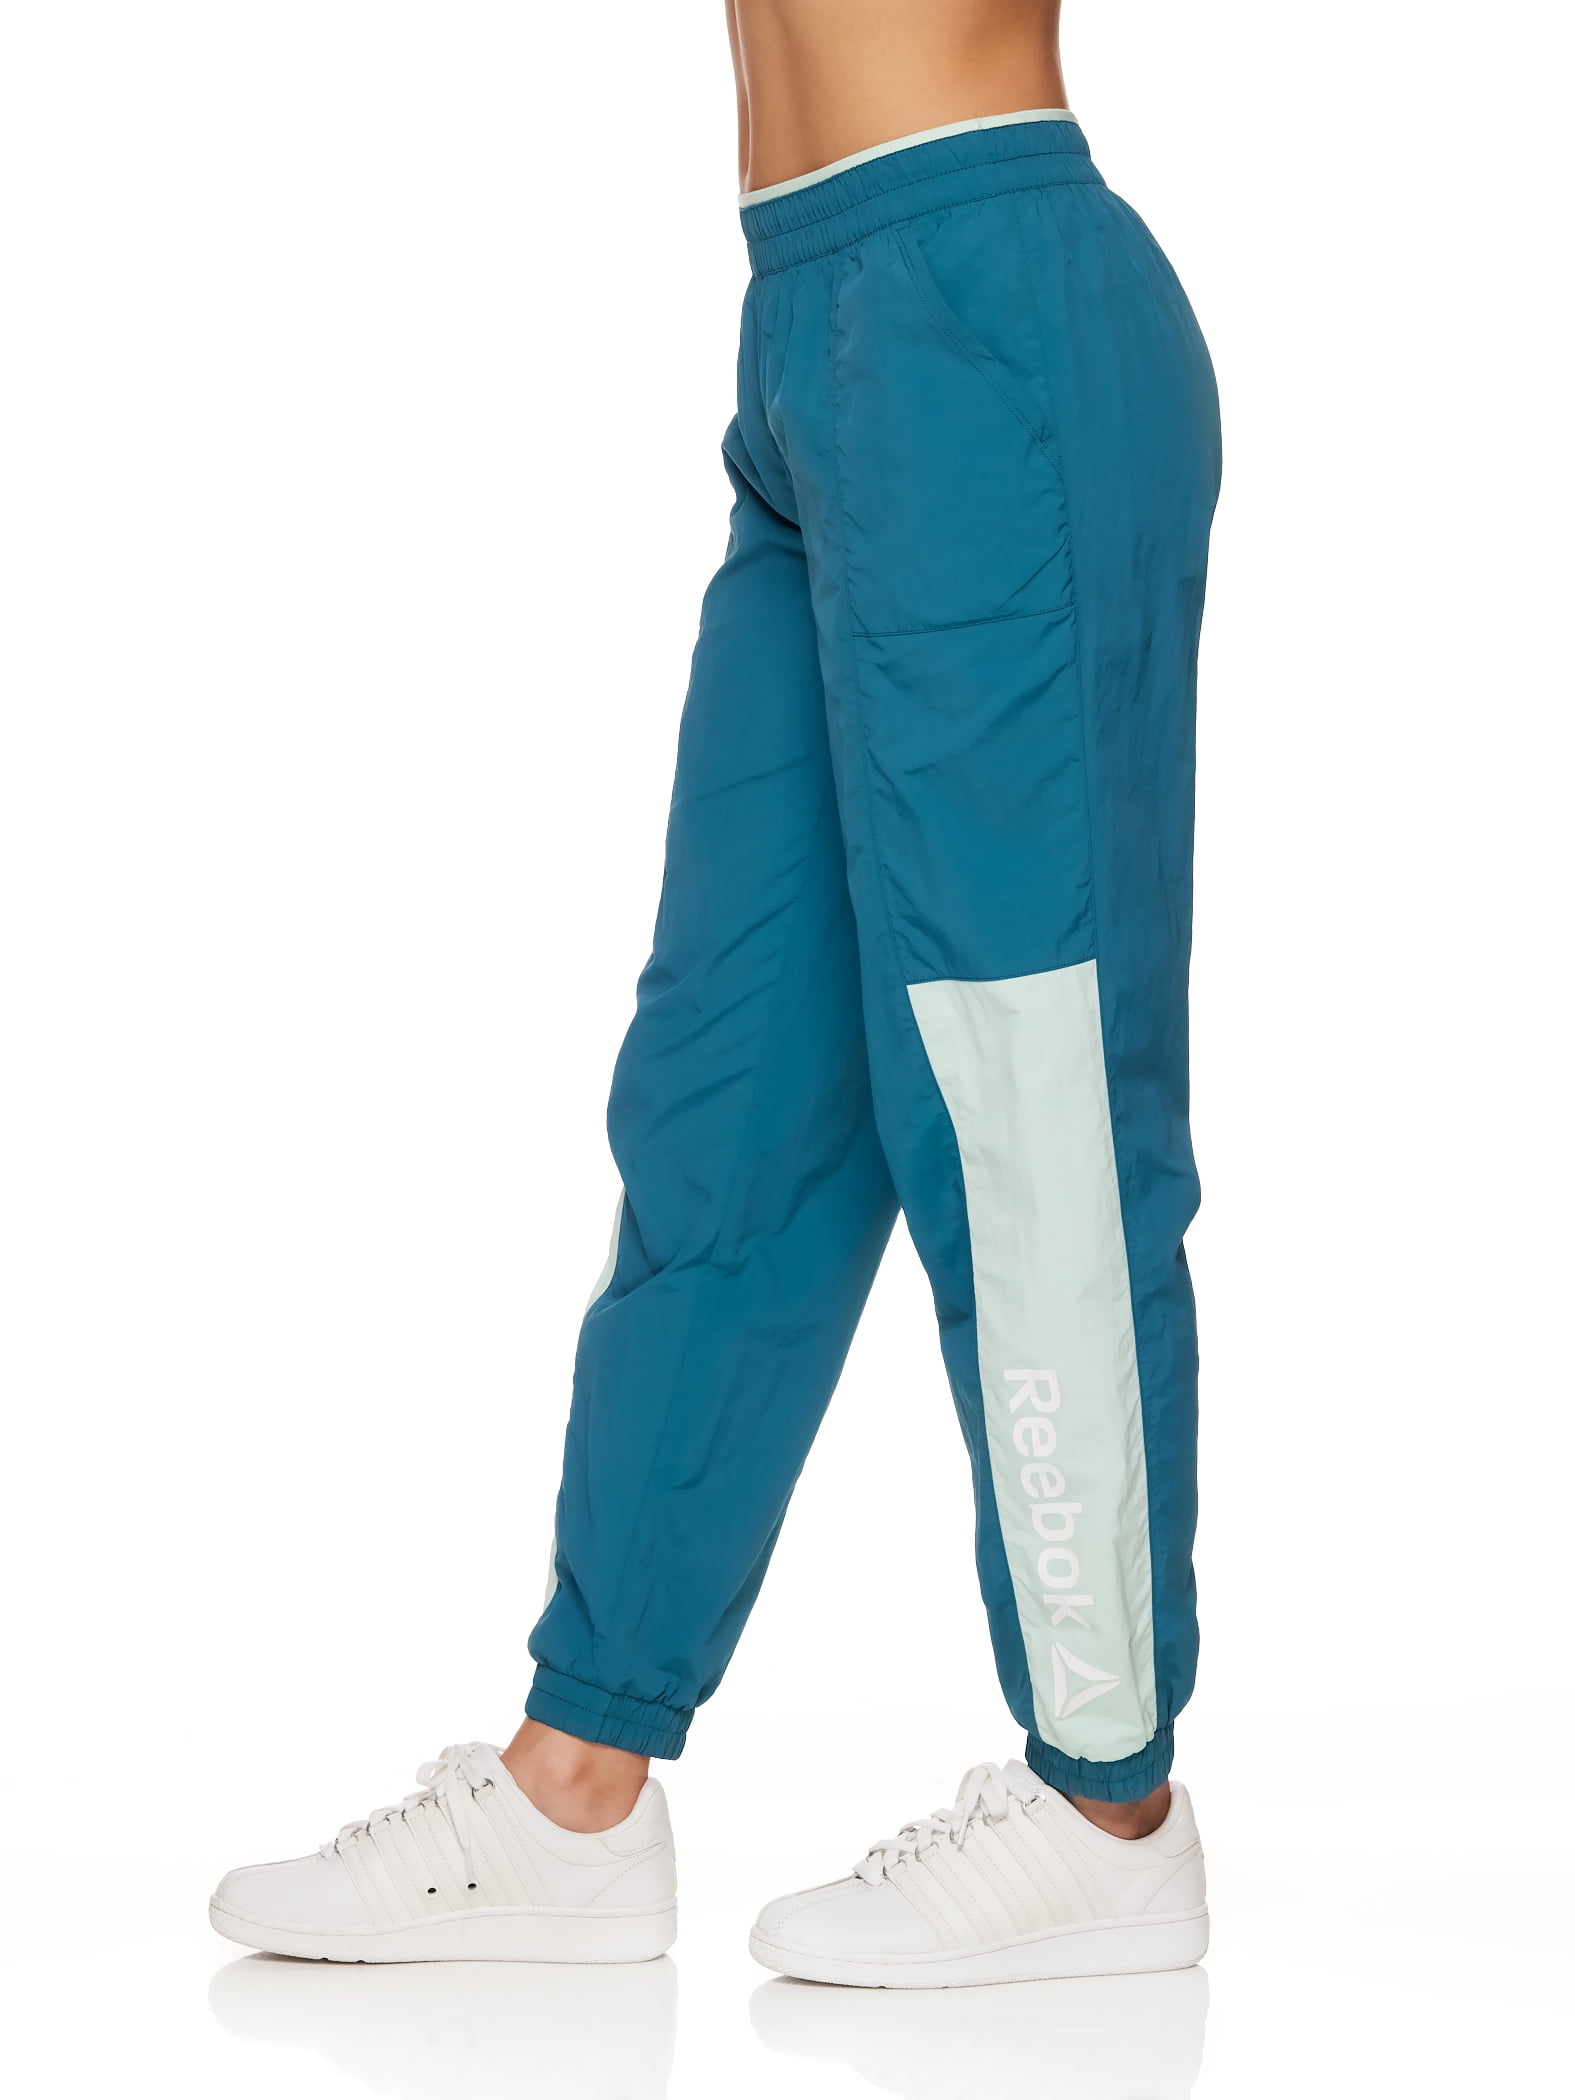 nieuws Uitreiken Berg Reebok Women's Focus Track Woven Pants with Front Pockets and Back Zipper  Pocket - Walmart.com